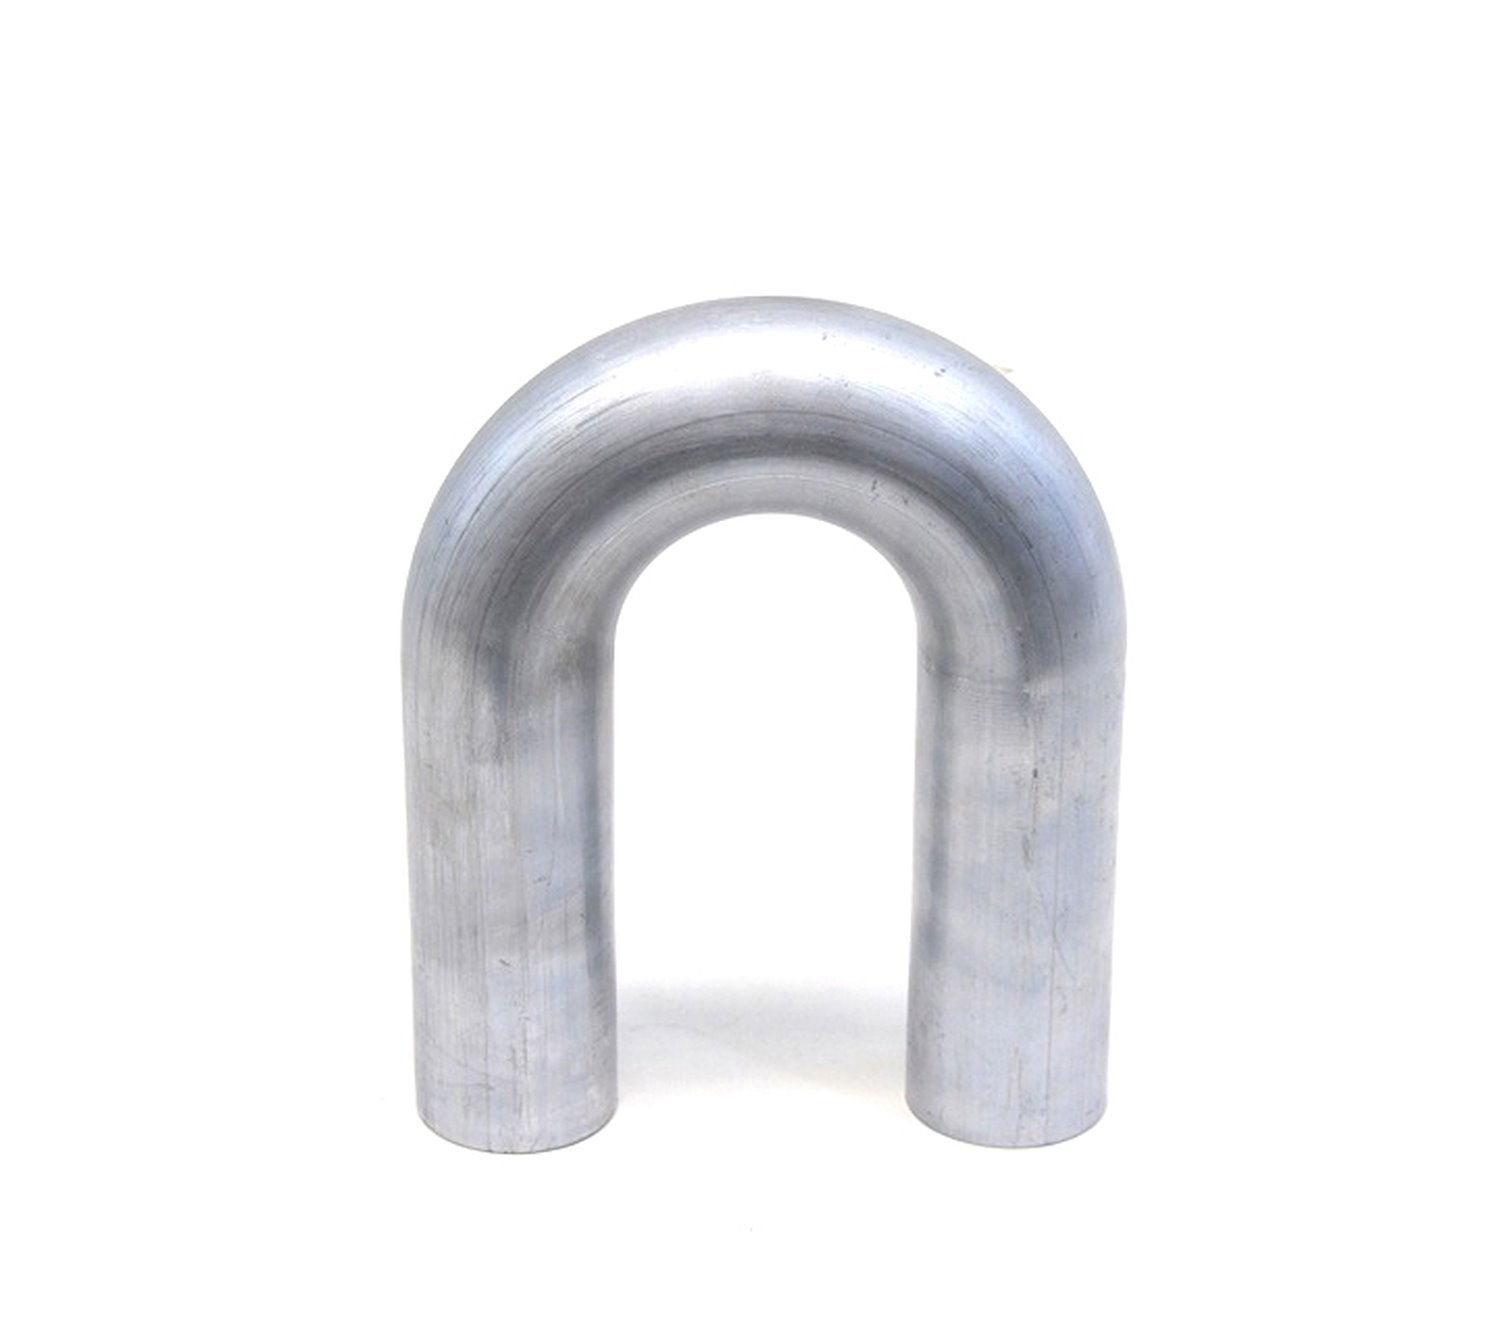 AT180-250-CLR-3 Aluminum Elbow Tube, 6061 Aluminum, 180-Degree U Bend Elbow Tubing, 2-1/2 in. OD, Tight Radius, 3 in. CLR